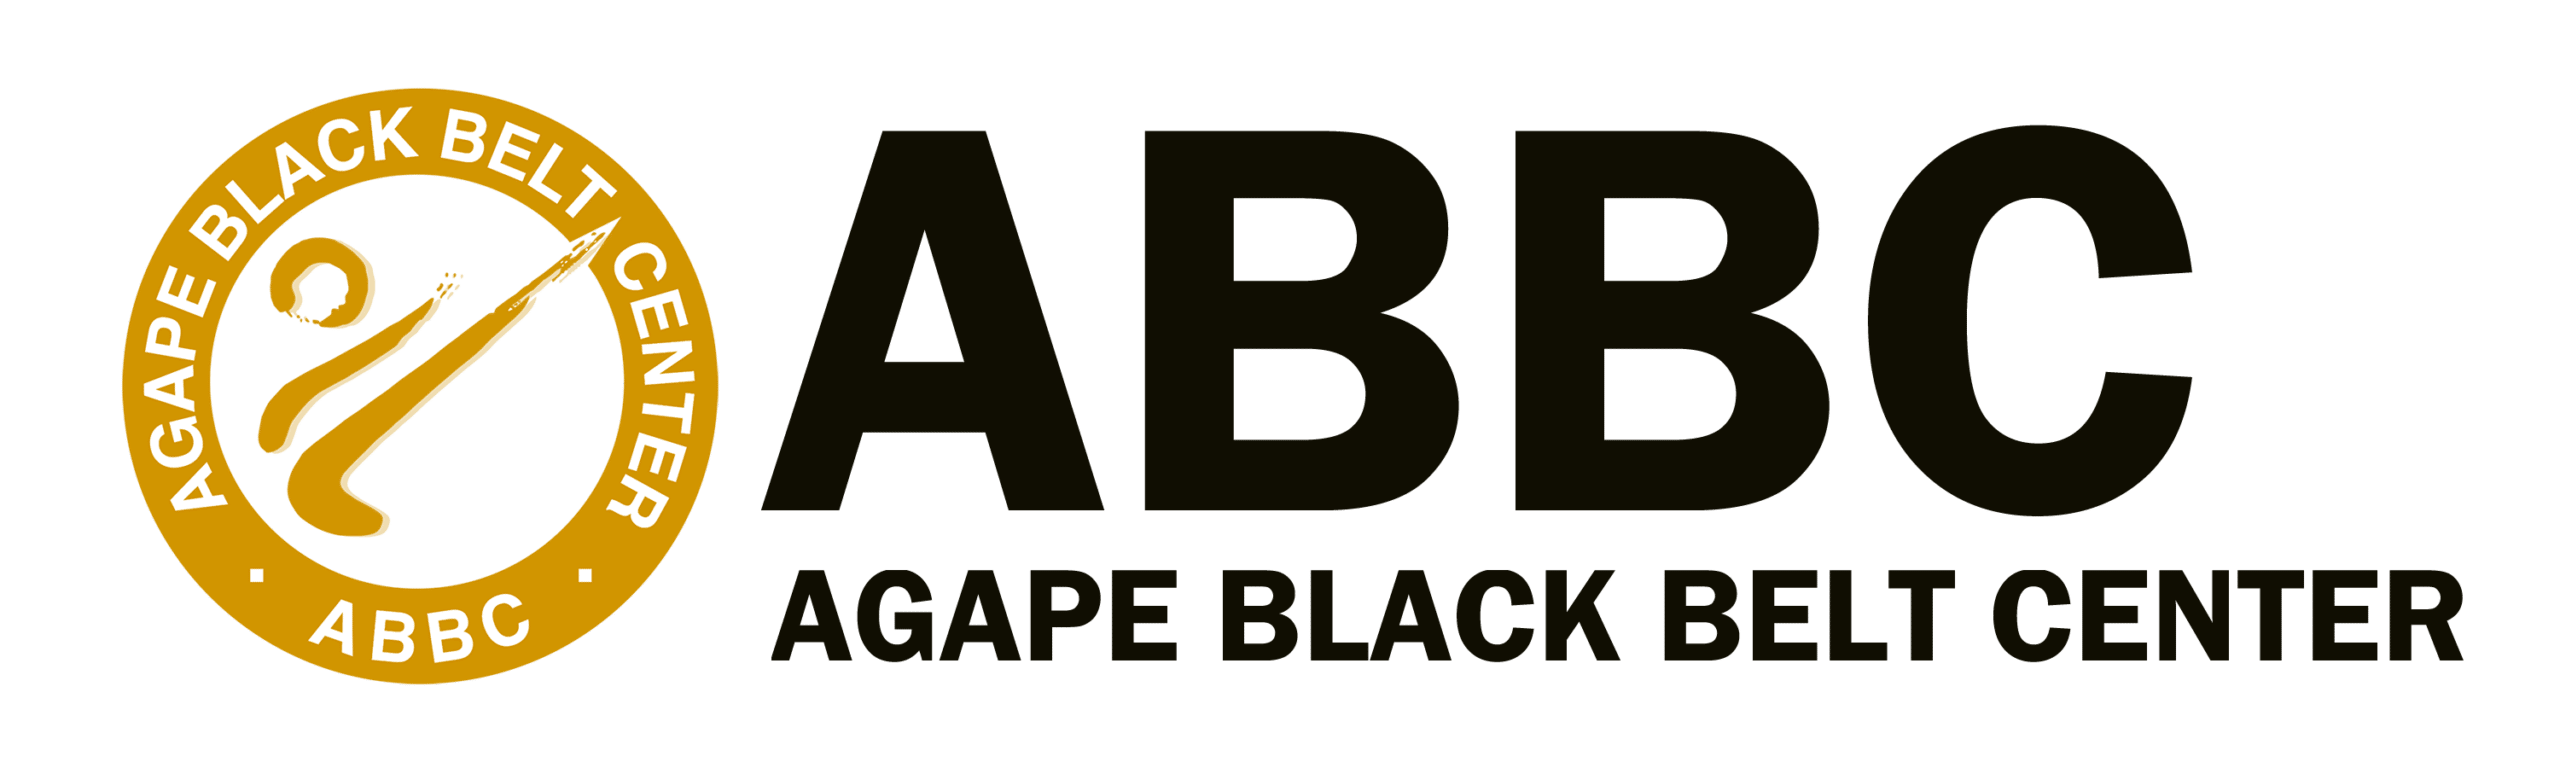 Agape Black Belt Center logo